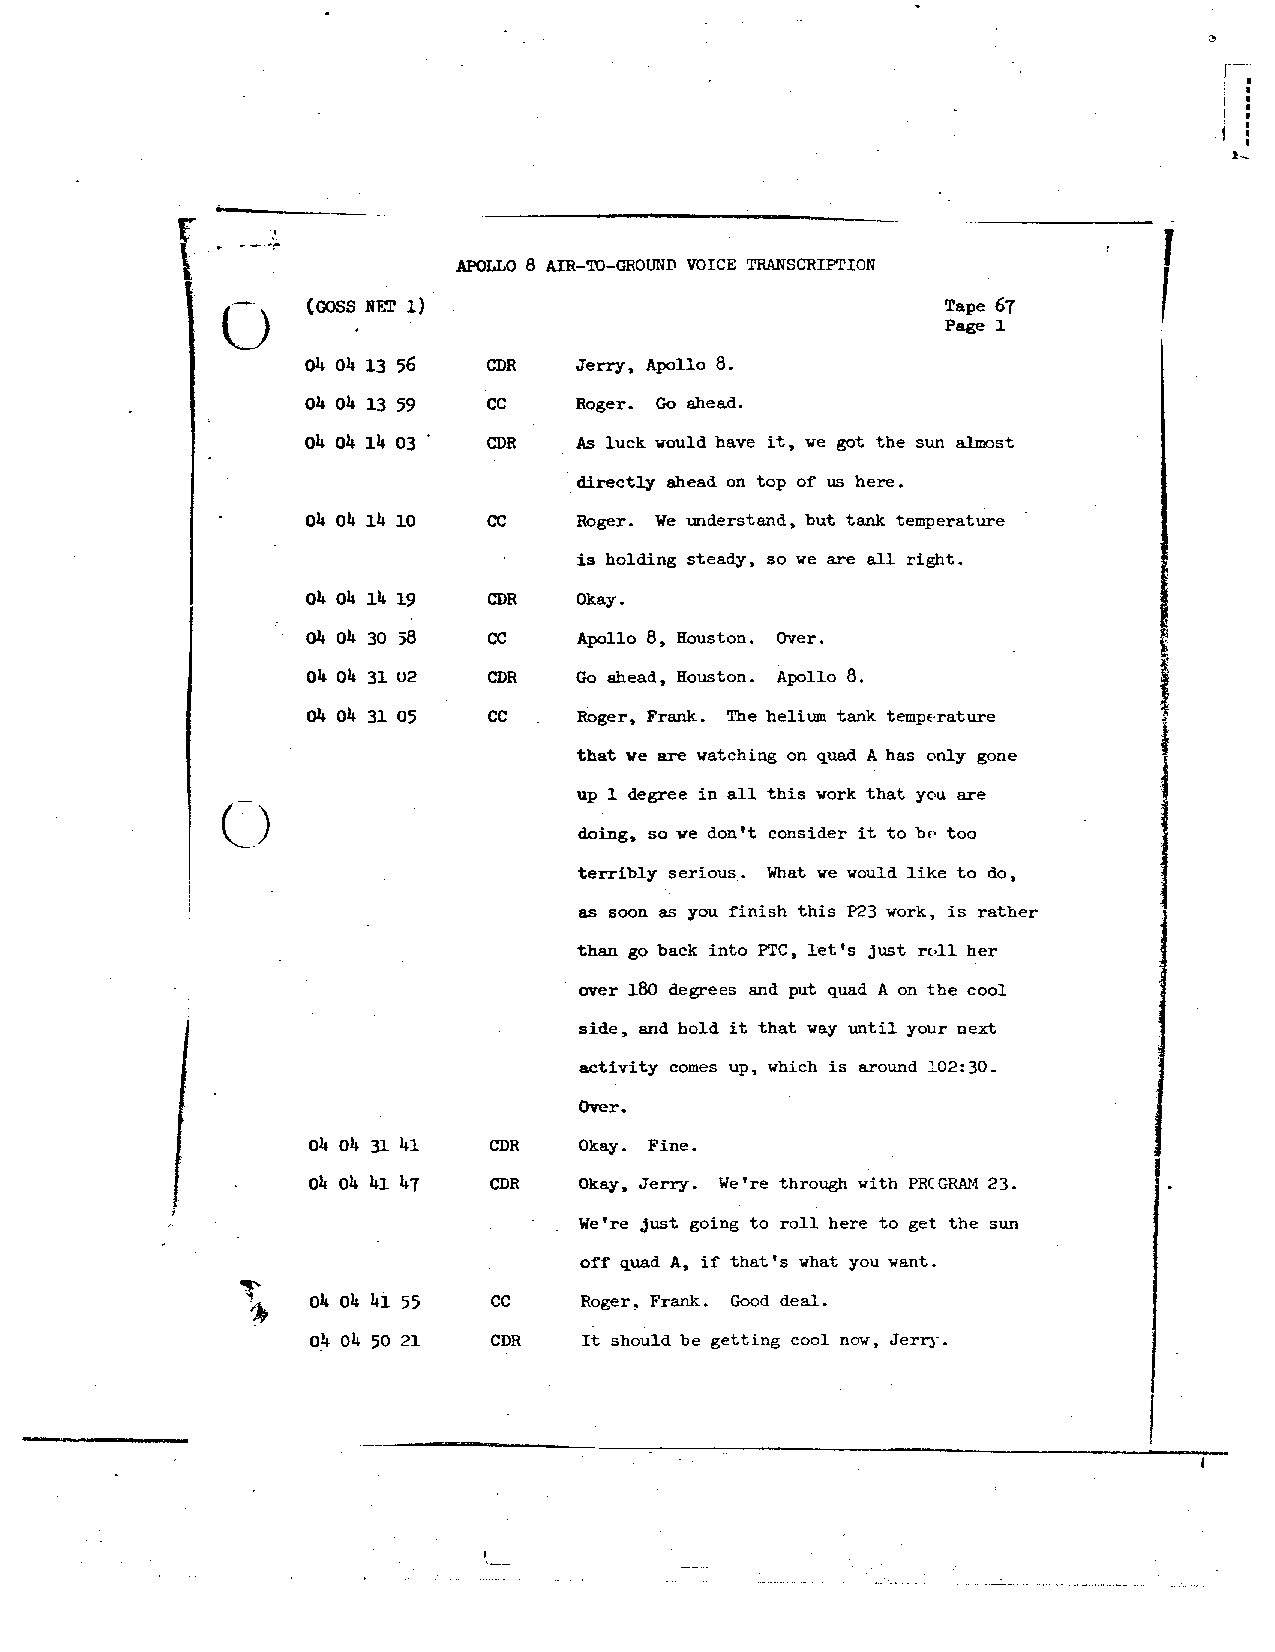 Page 527 of Apollo 8’s original transcript